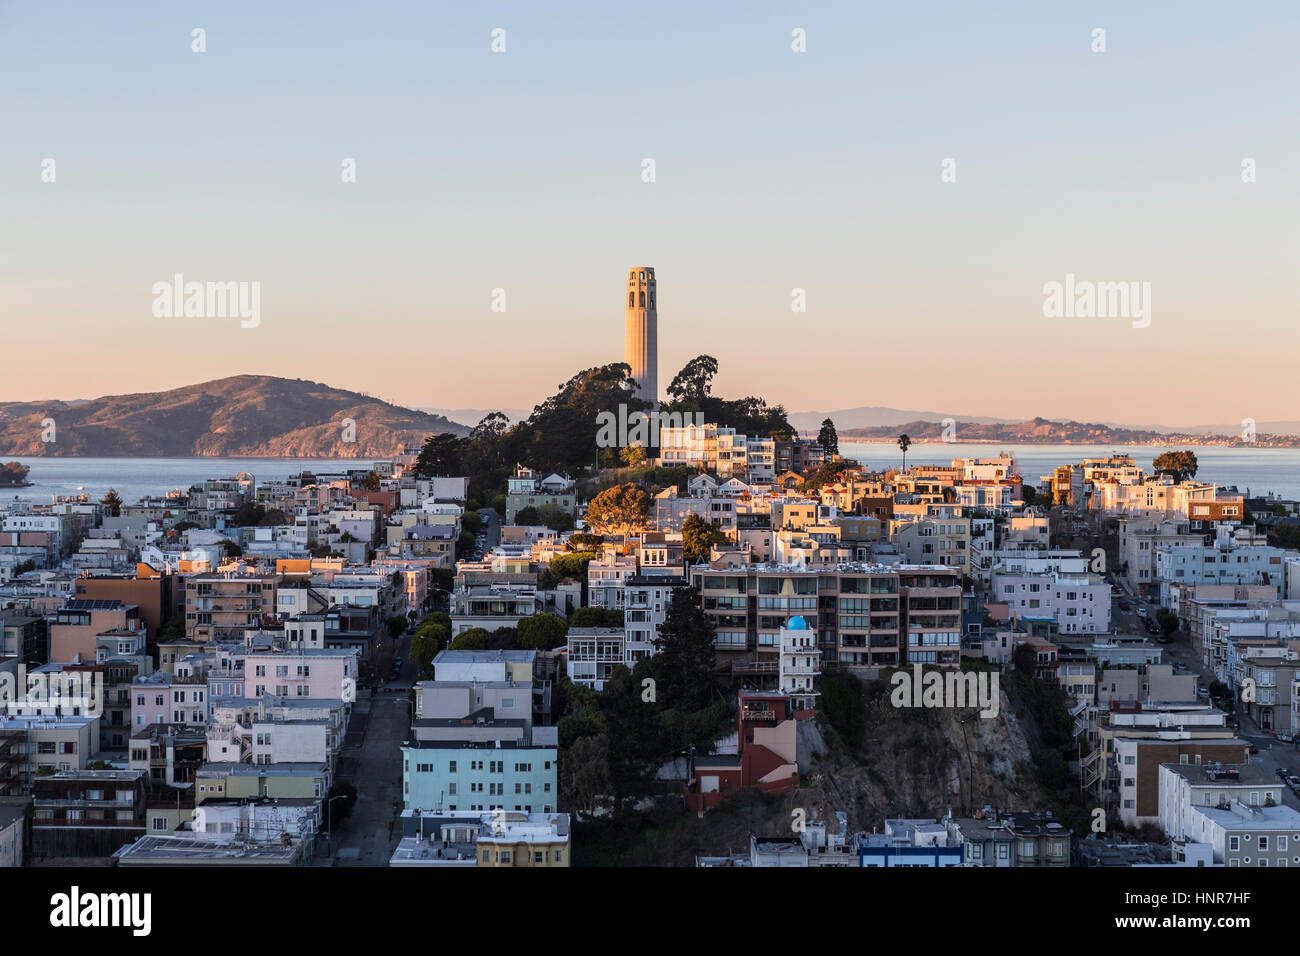 San Francisco, Californie, USA - 13 janvier 2013 : Fin de l'après-midi vue de la Coit Tower et de Telegraph Hill, près du centre-ville de San Francisco. Banque D'Images